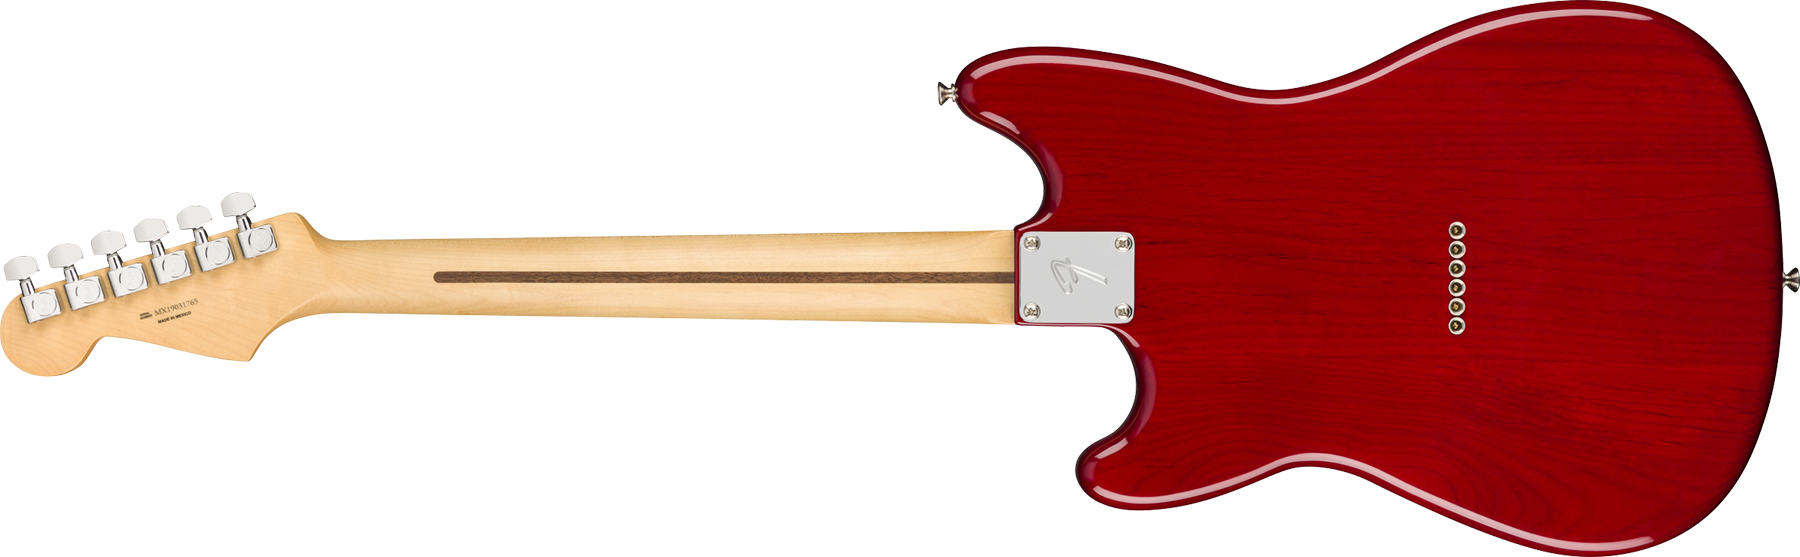 Fender Duo-sonic Player Hs Ht Mn - Crimson Red Transparent - Guitare Électrique RÉtro Rock - Variation 1